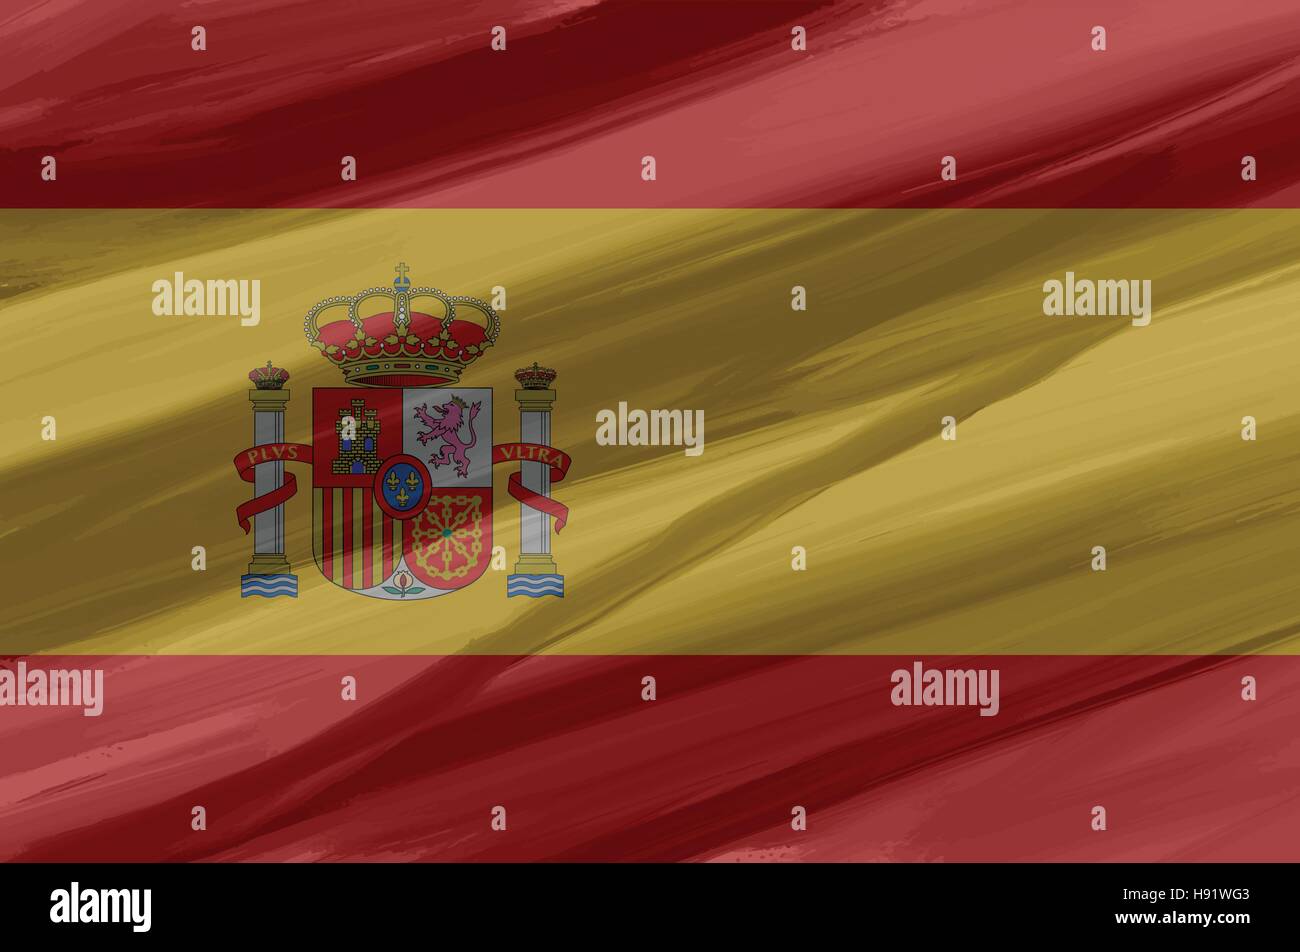 Spanien-bemalt / gezeichnete Vektor-Flagge. Dramatische, ungewöhnliche Optik. Vektor-Datei enthält Flagge und Textur-Layer Stock Vektor